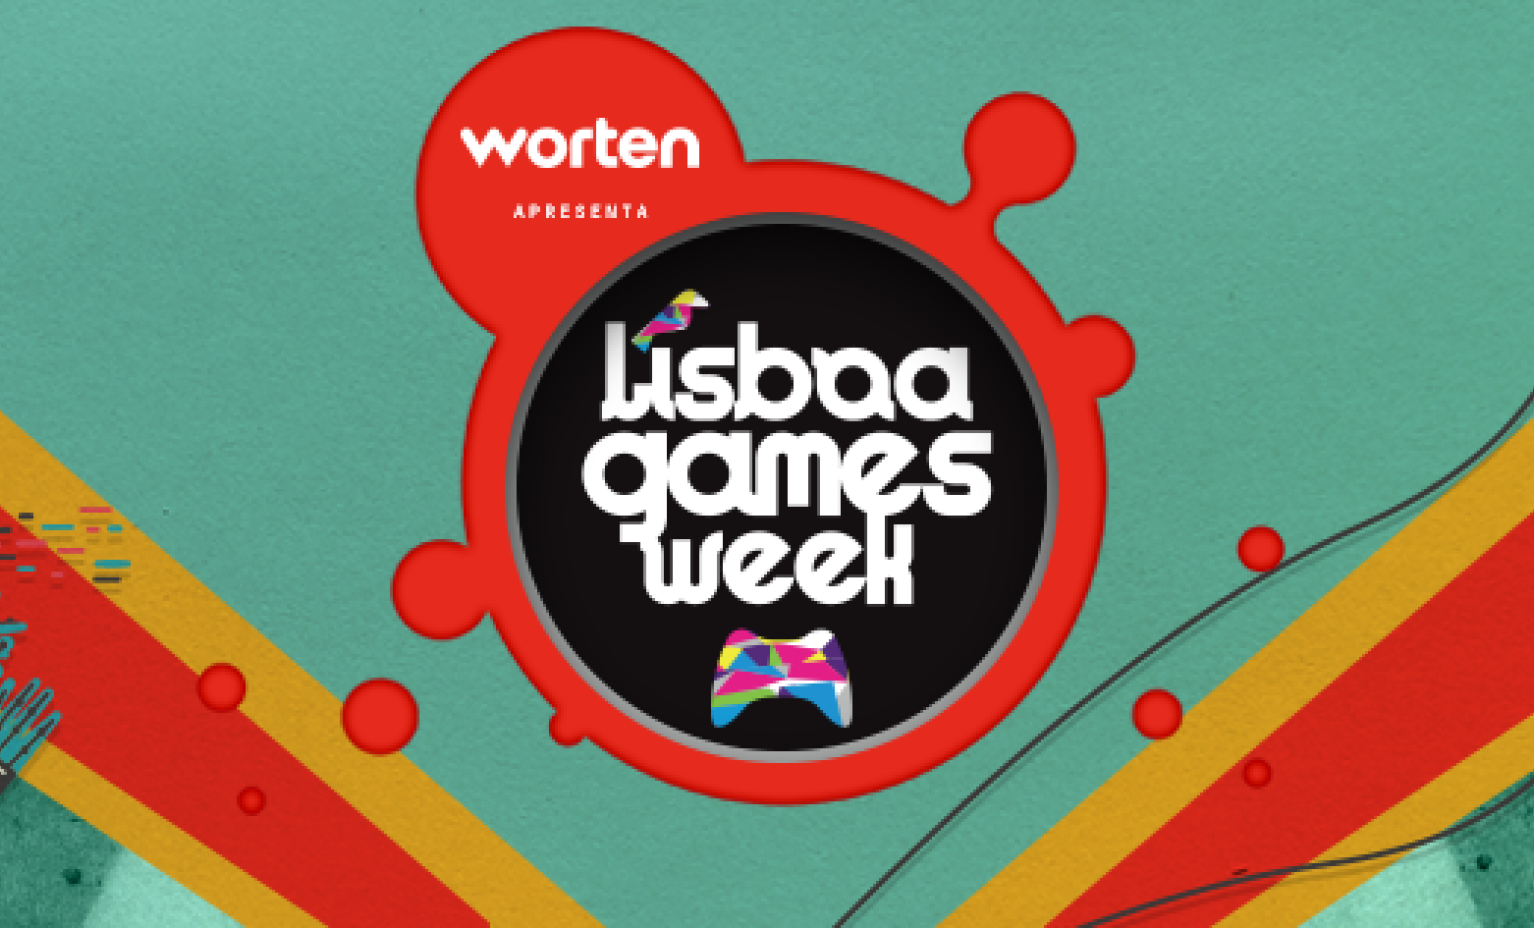 Tudo o que podes encontrar no Lisboa Games Week, de 17 a 20 de